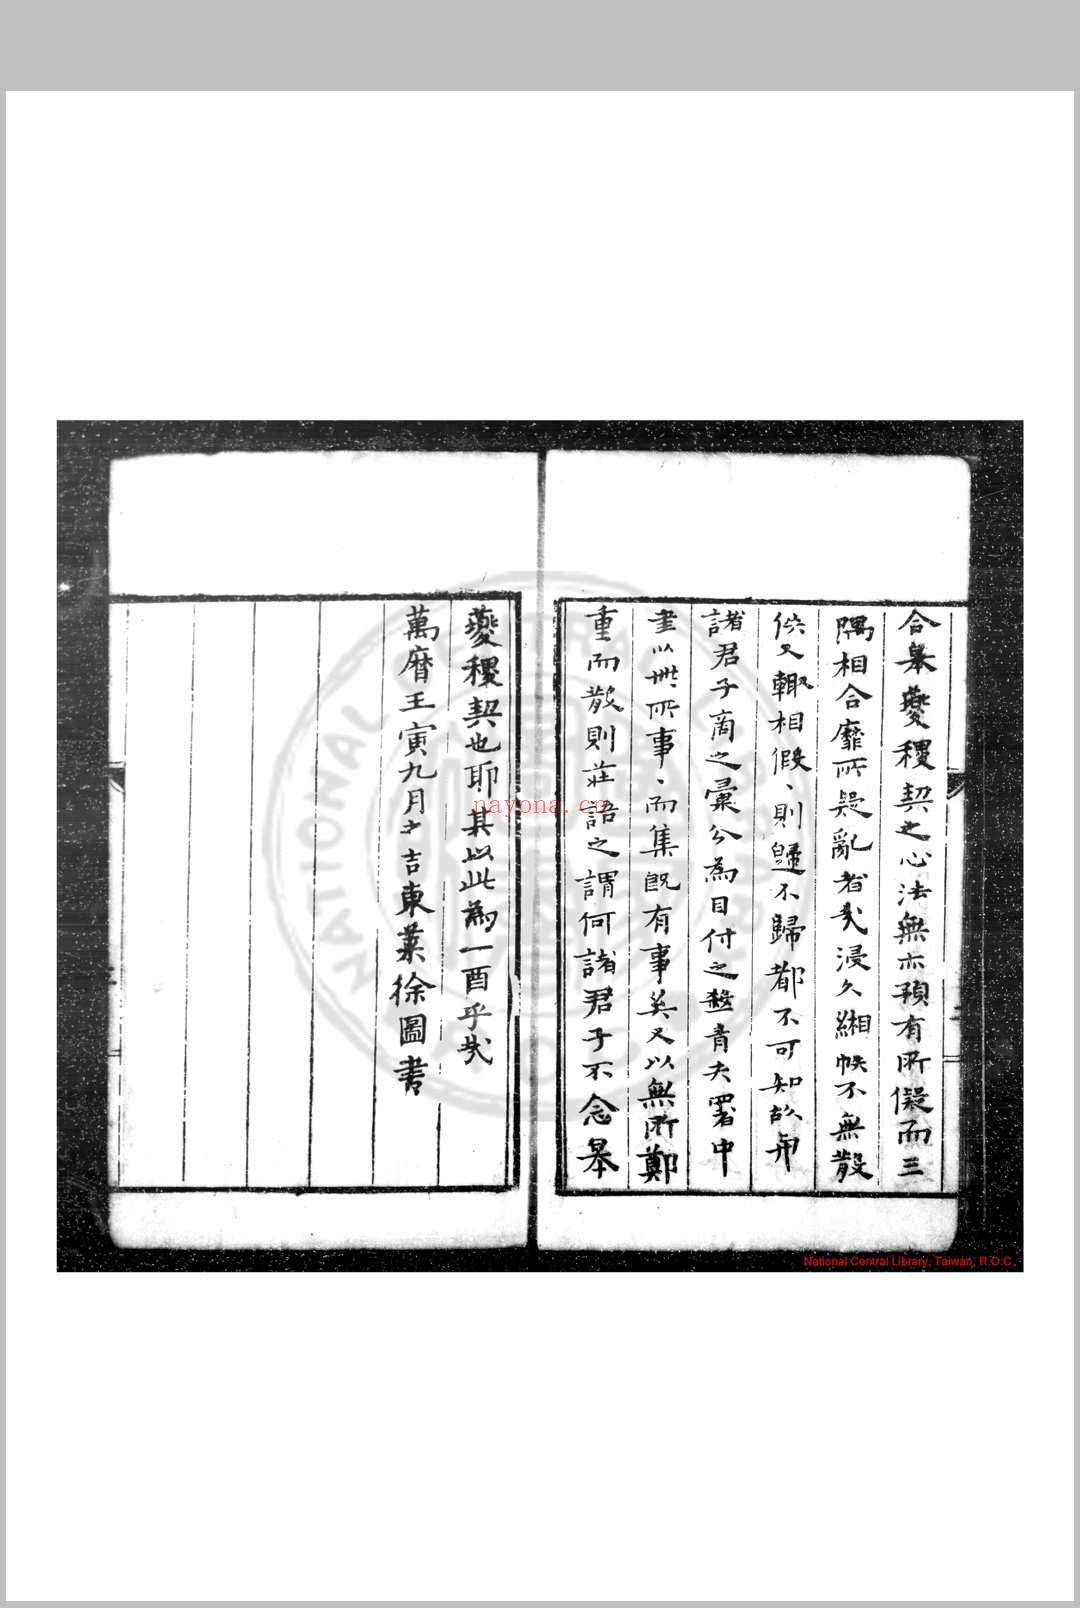 行人司书目 (明)曾守身等编 明万历壬寅(三十年, 1602)刊本